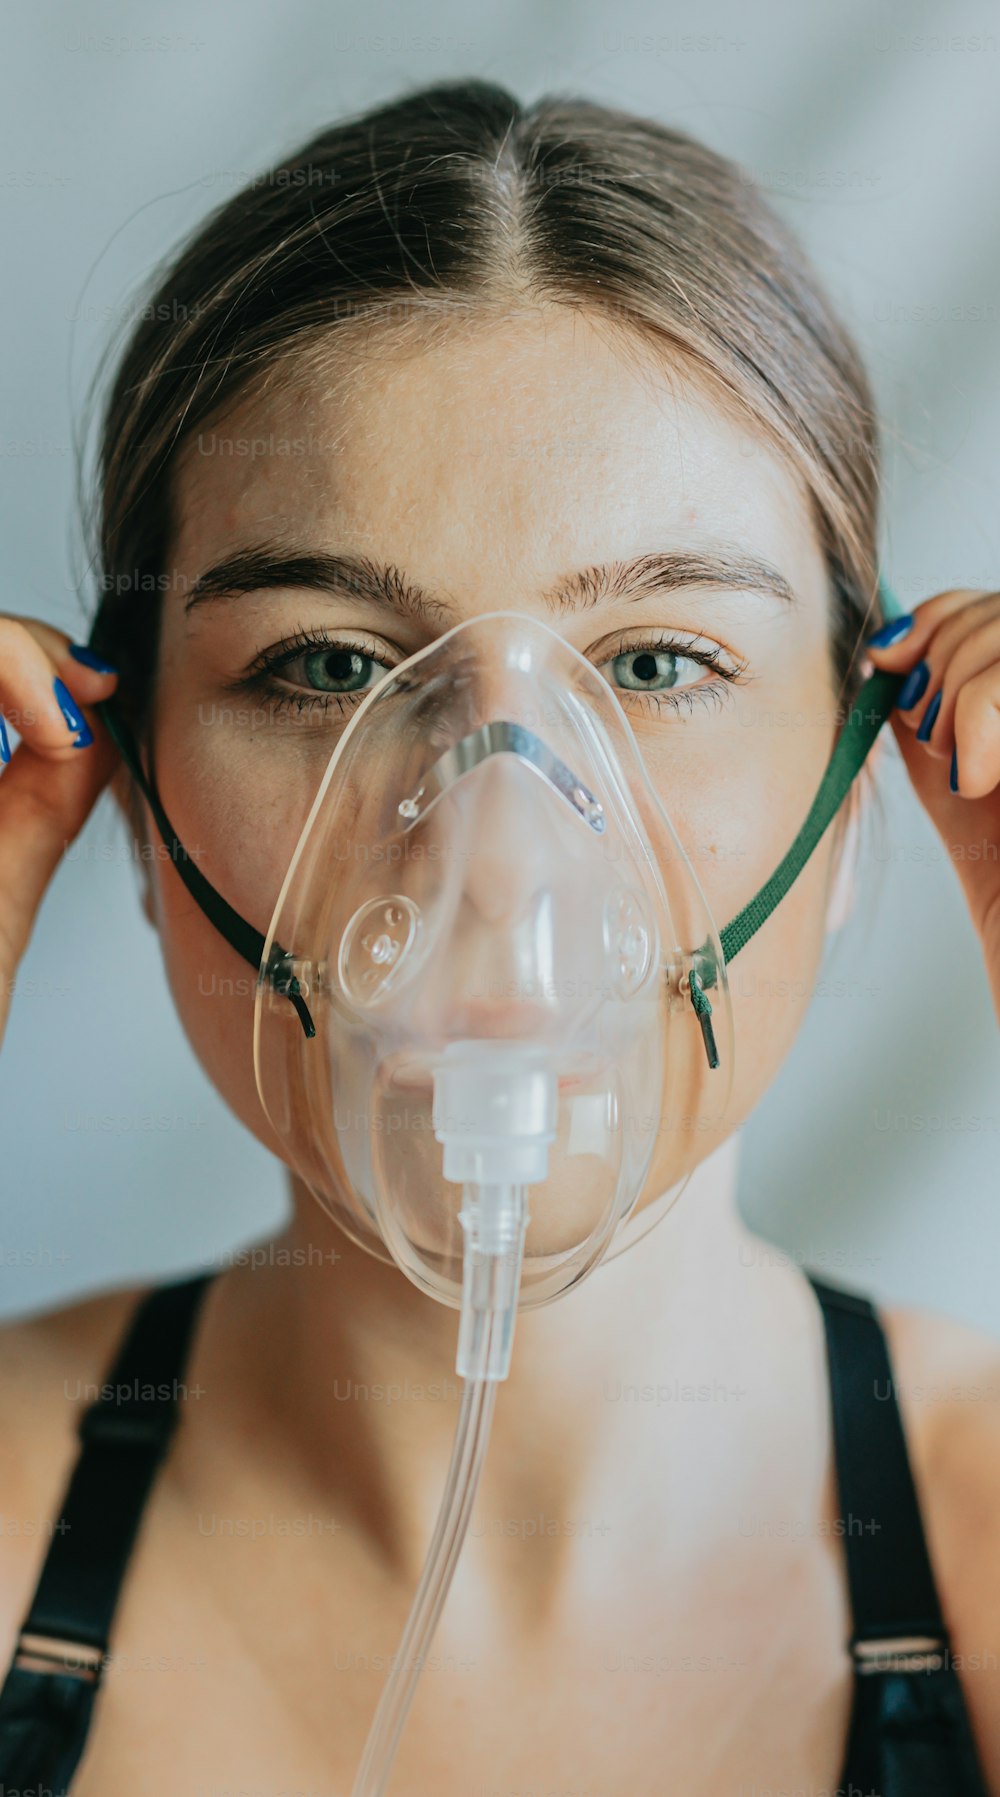 Una mujer con una máscara de oxígeno con un tubo de respiración conectado a su cara